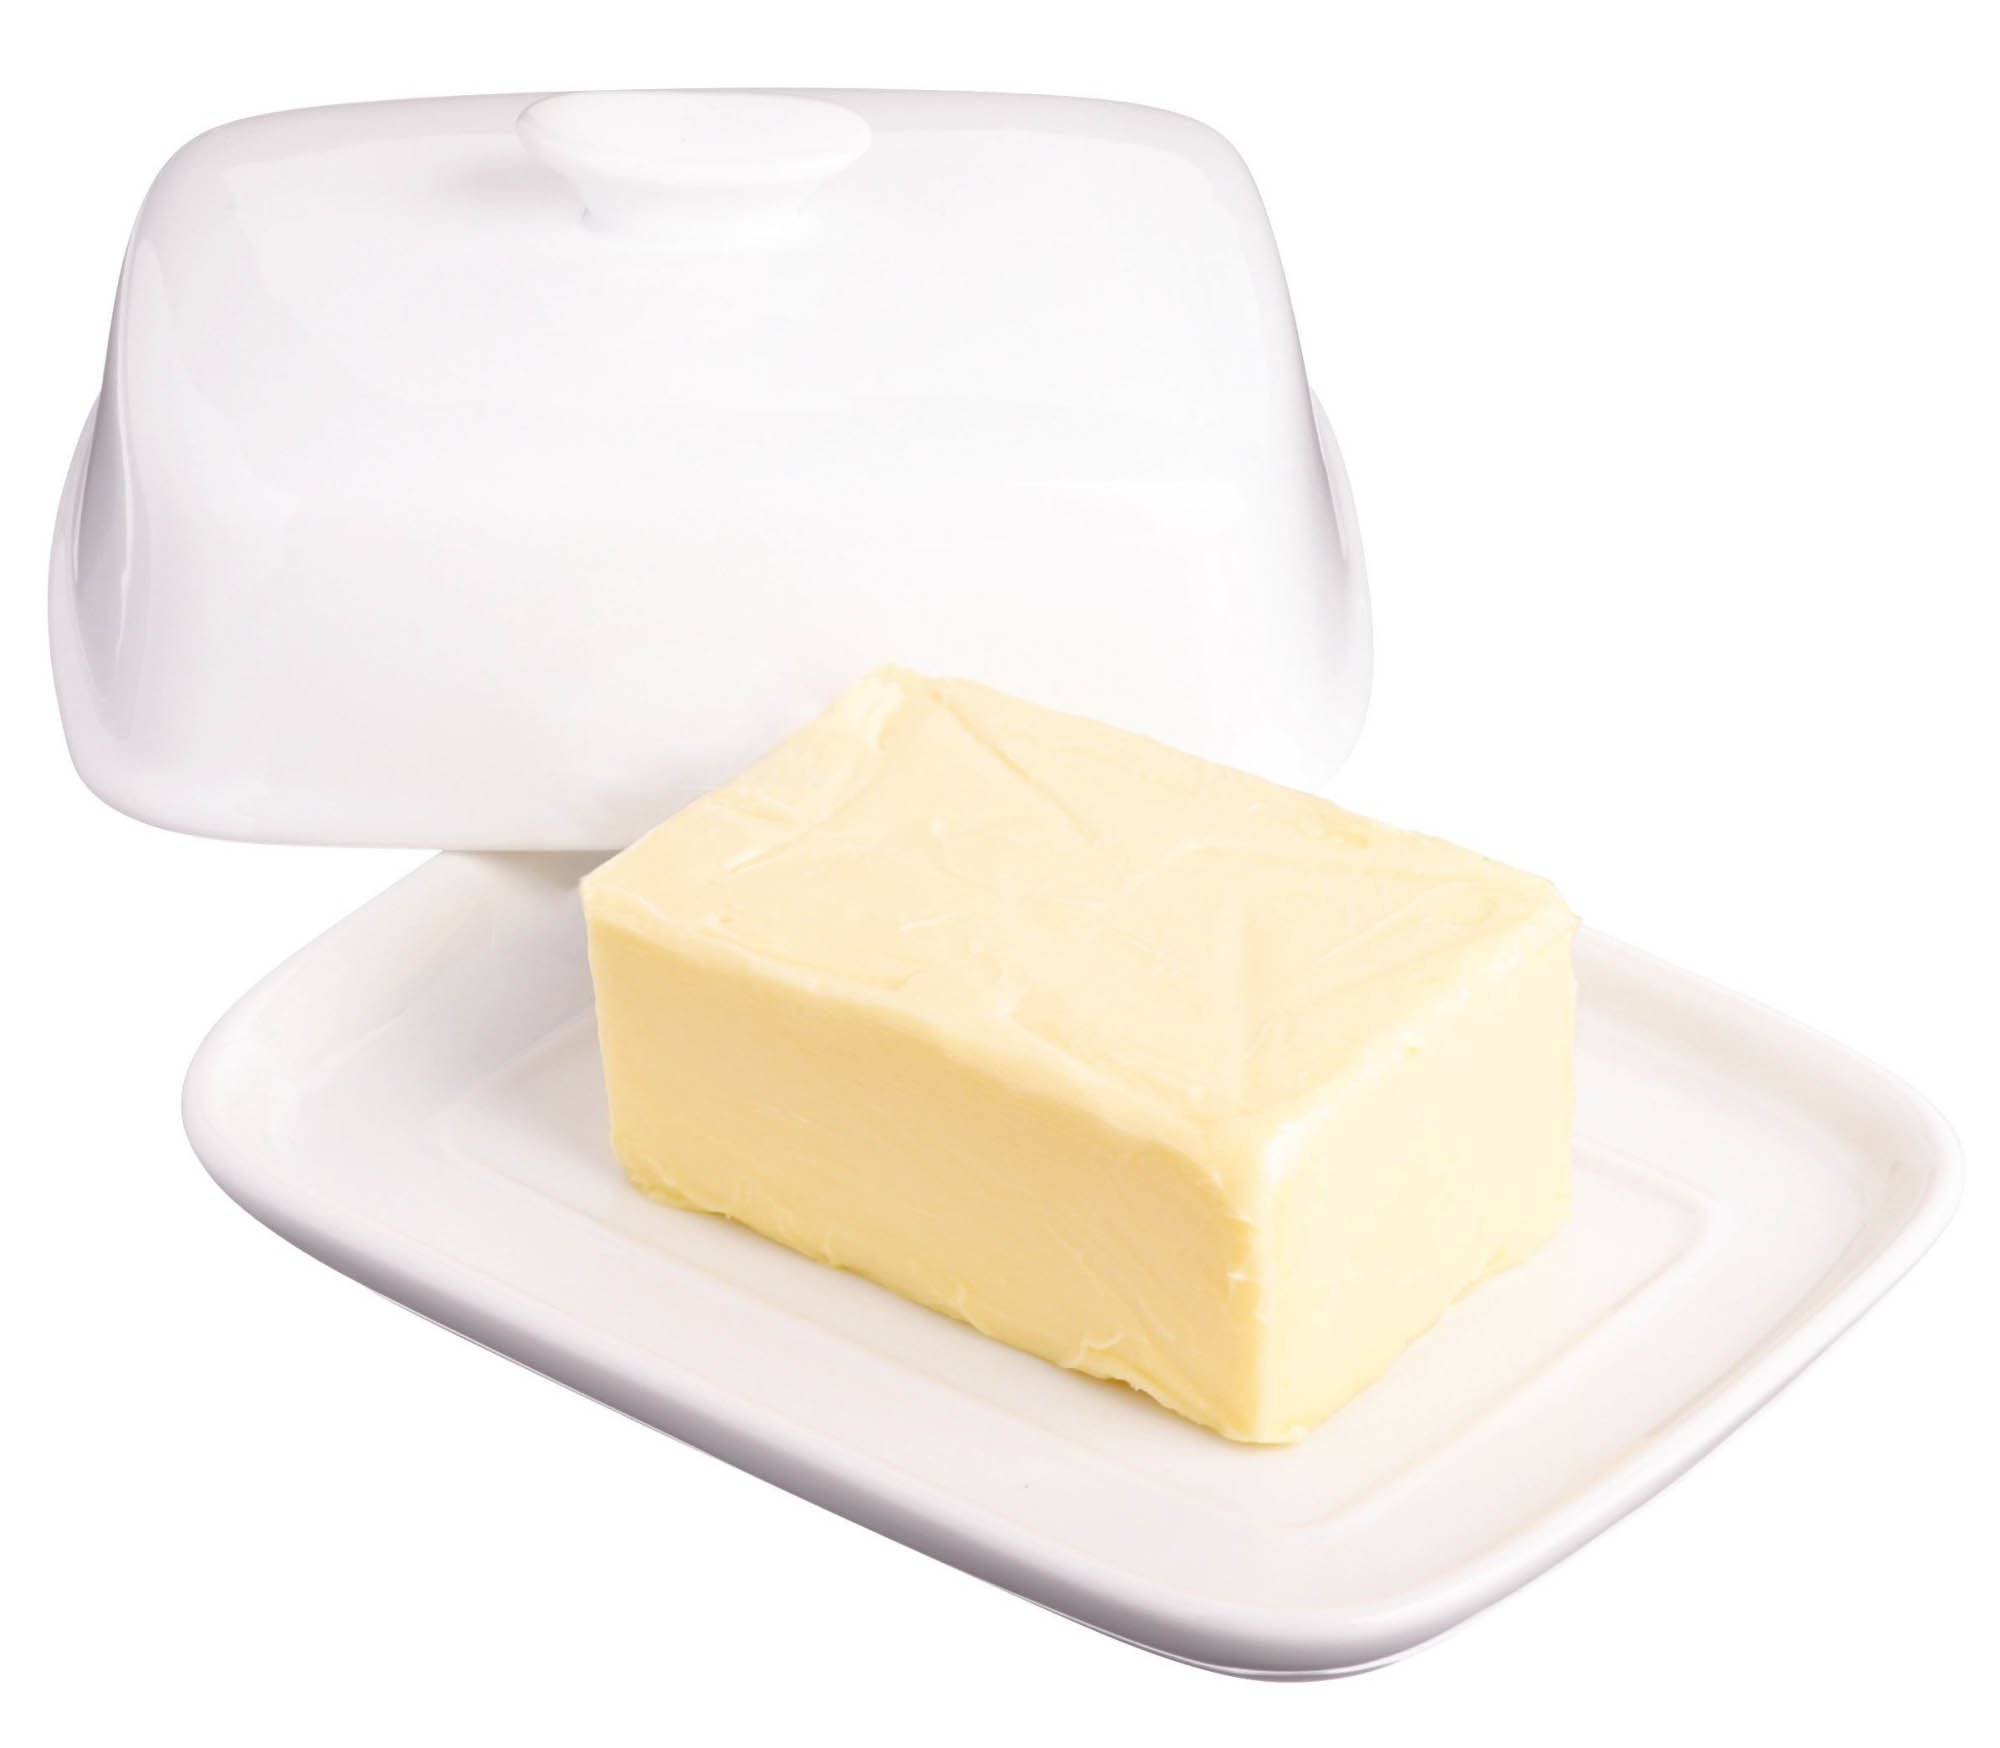 Сливочное масло мягкое в холодильнике. Маслёнка Rio белая 3619535. Белая масленка артикул ca806. Масленка «Holden». Масленка керамическая jd7111-1.